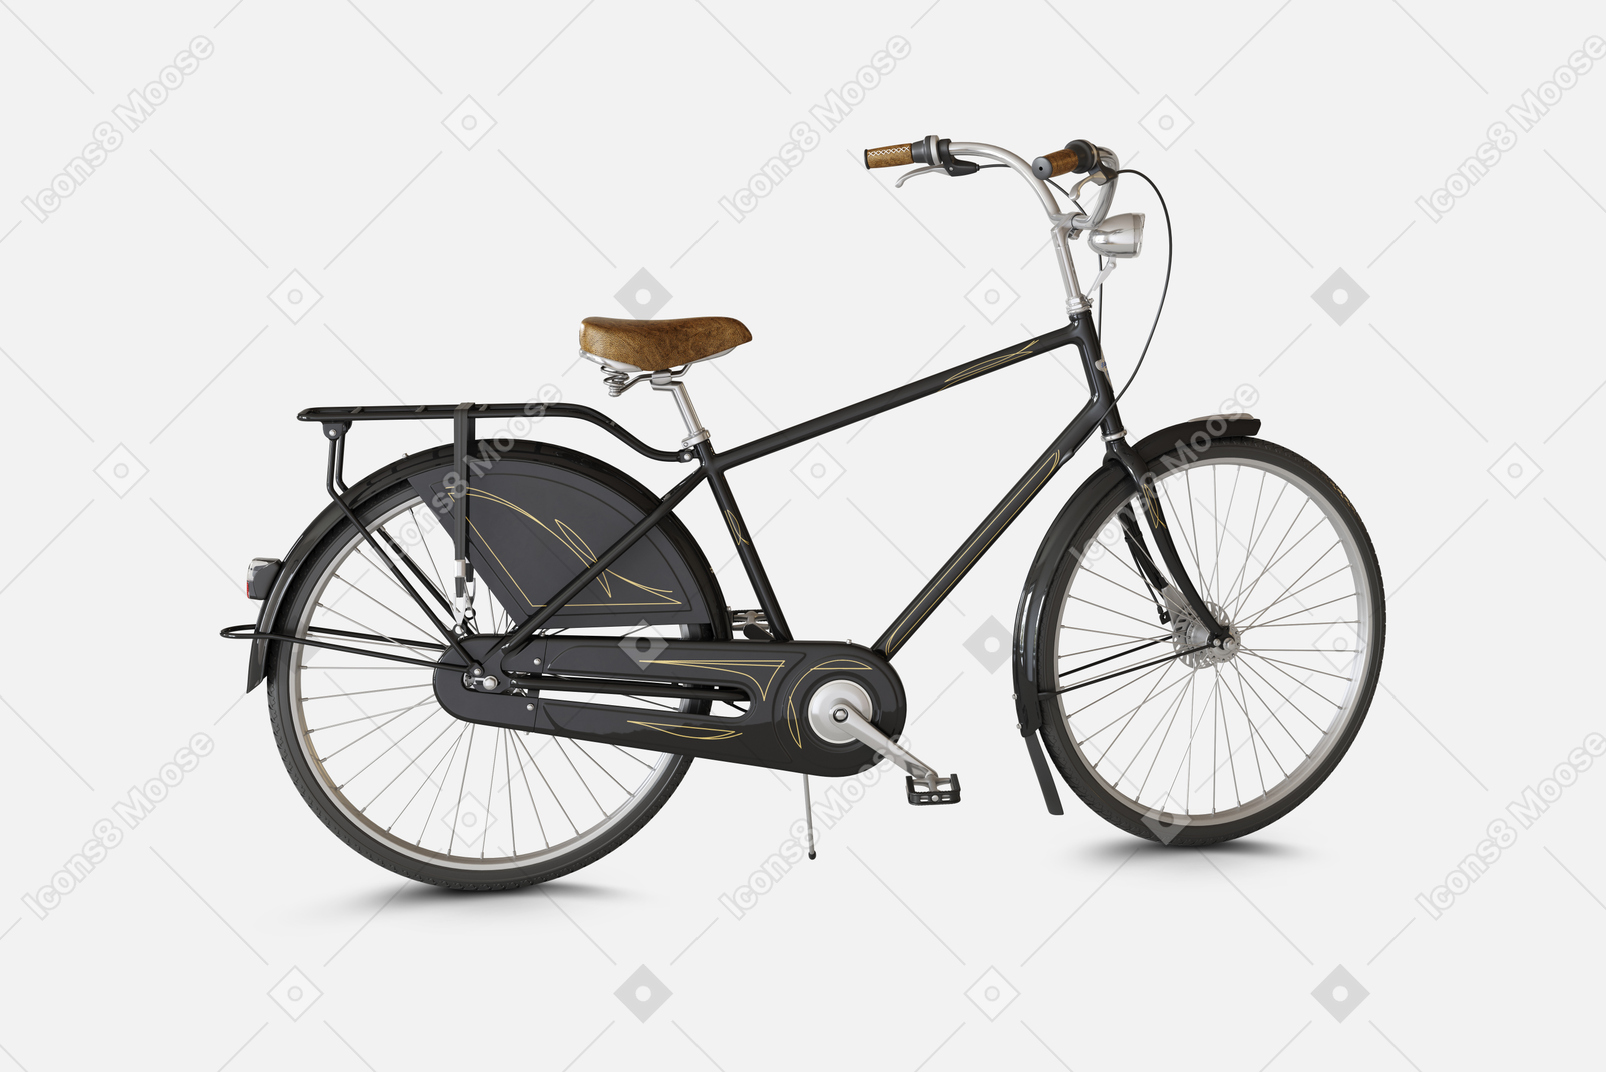 Bicicleta de cidade preta com freios dianteiros e traseiros e um quadro especial